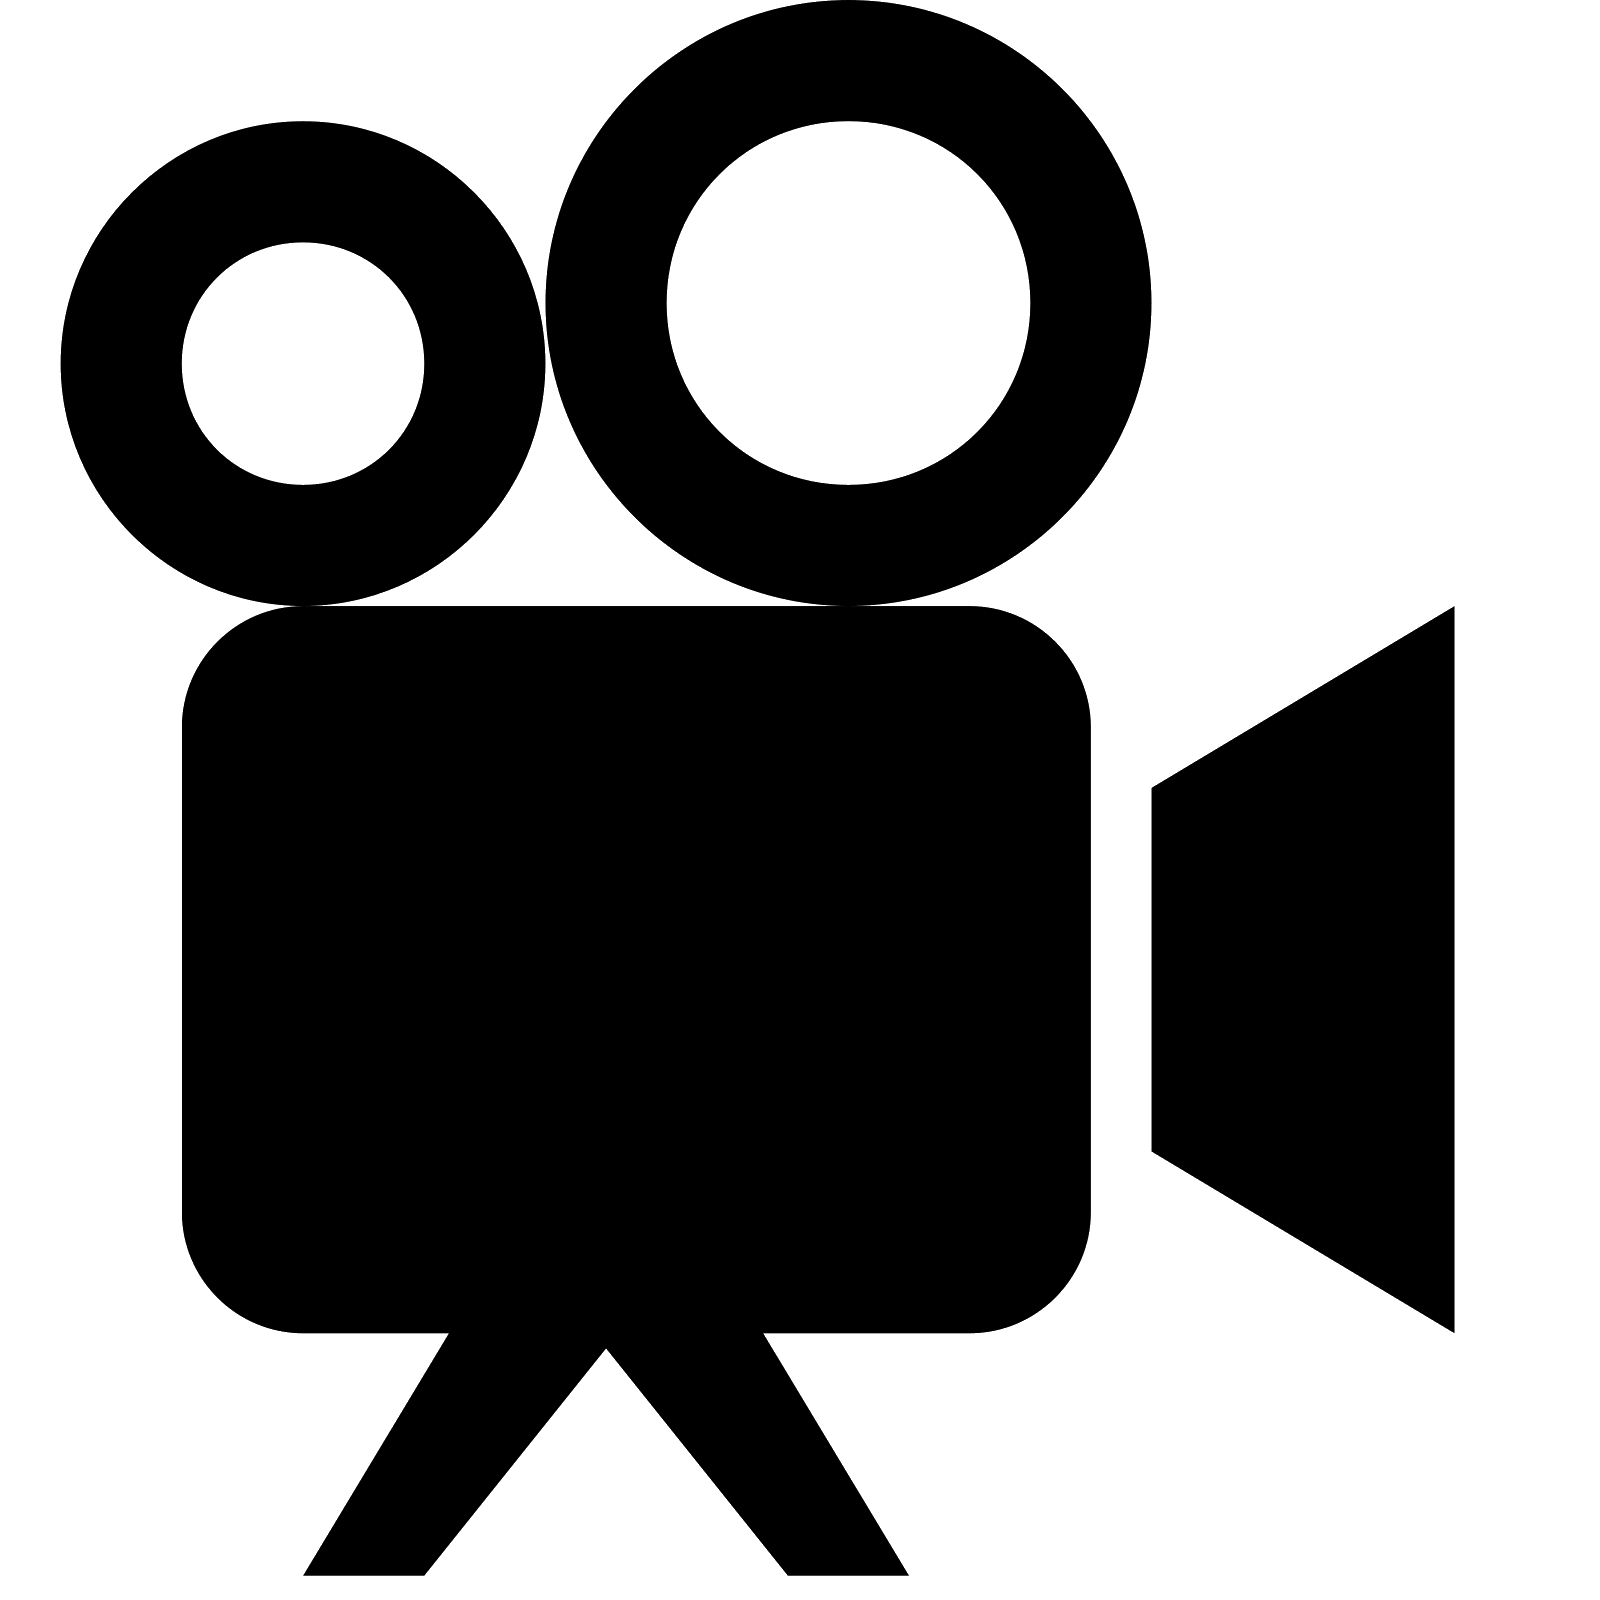 Projector Icon - DI Black Symbol Icons 